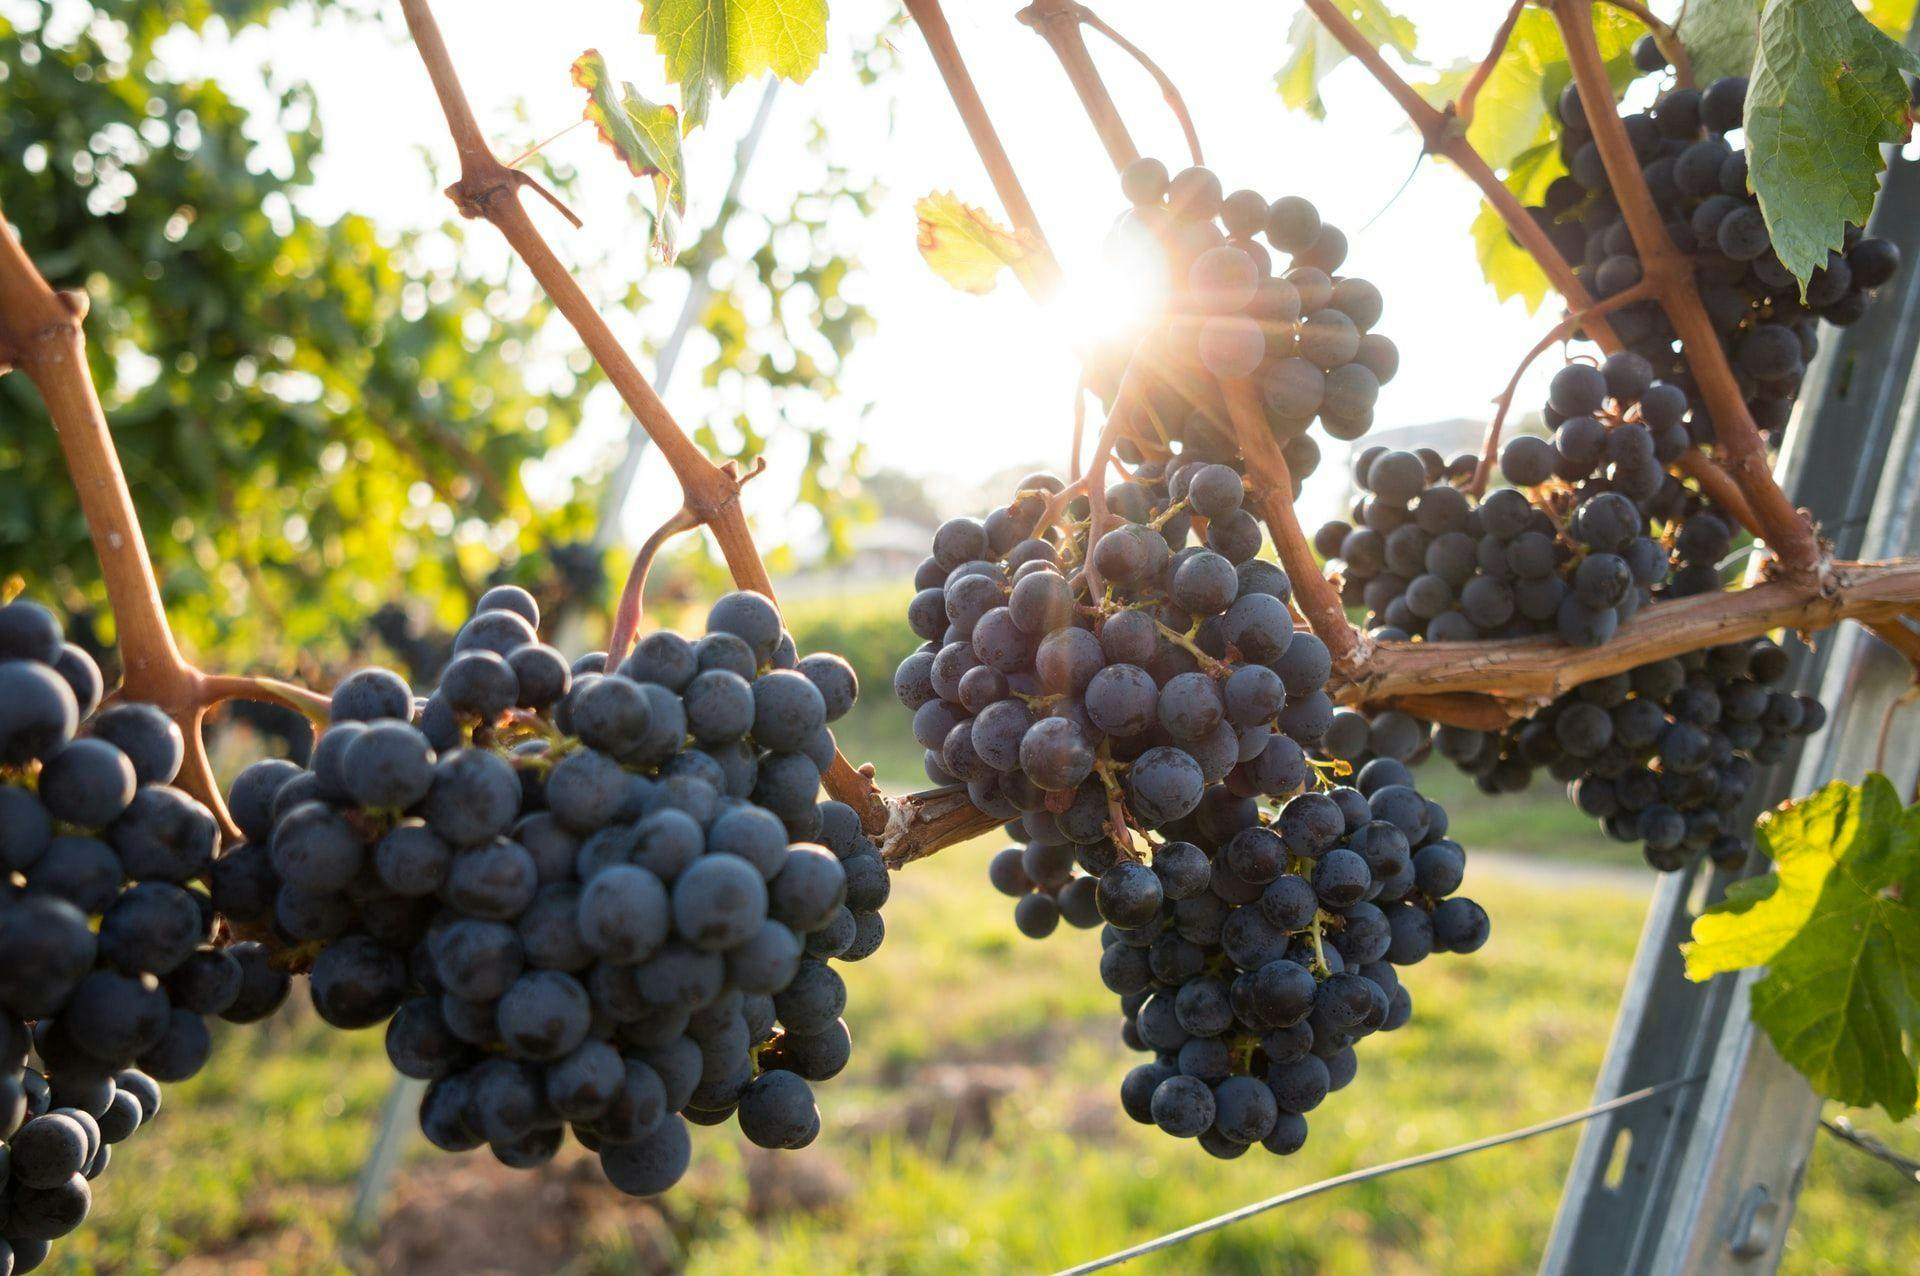 Сбор урожая винограда в Люксембурге начнется позже из-за погоды